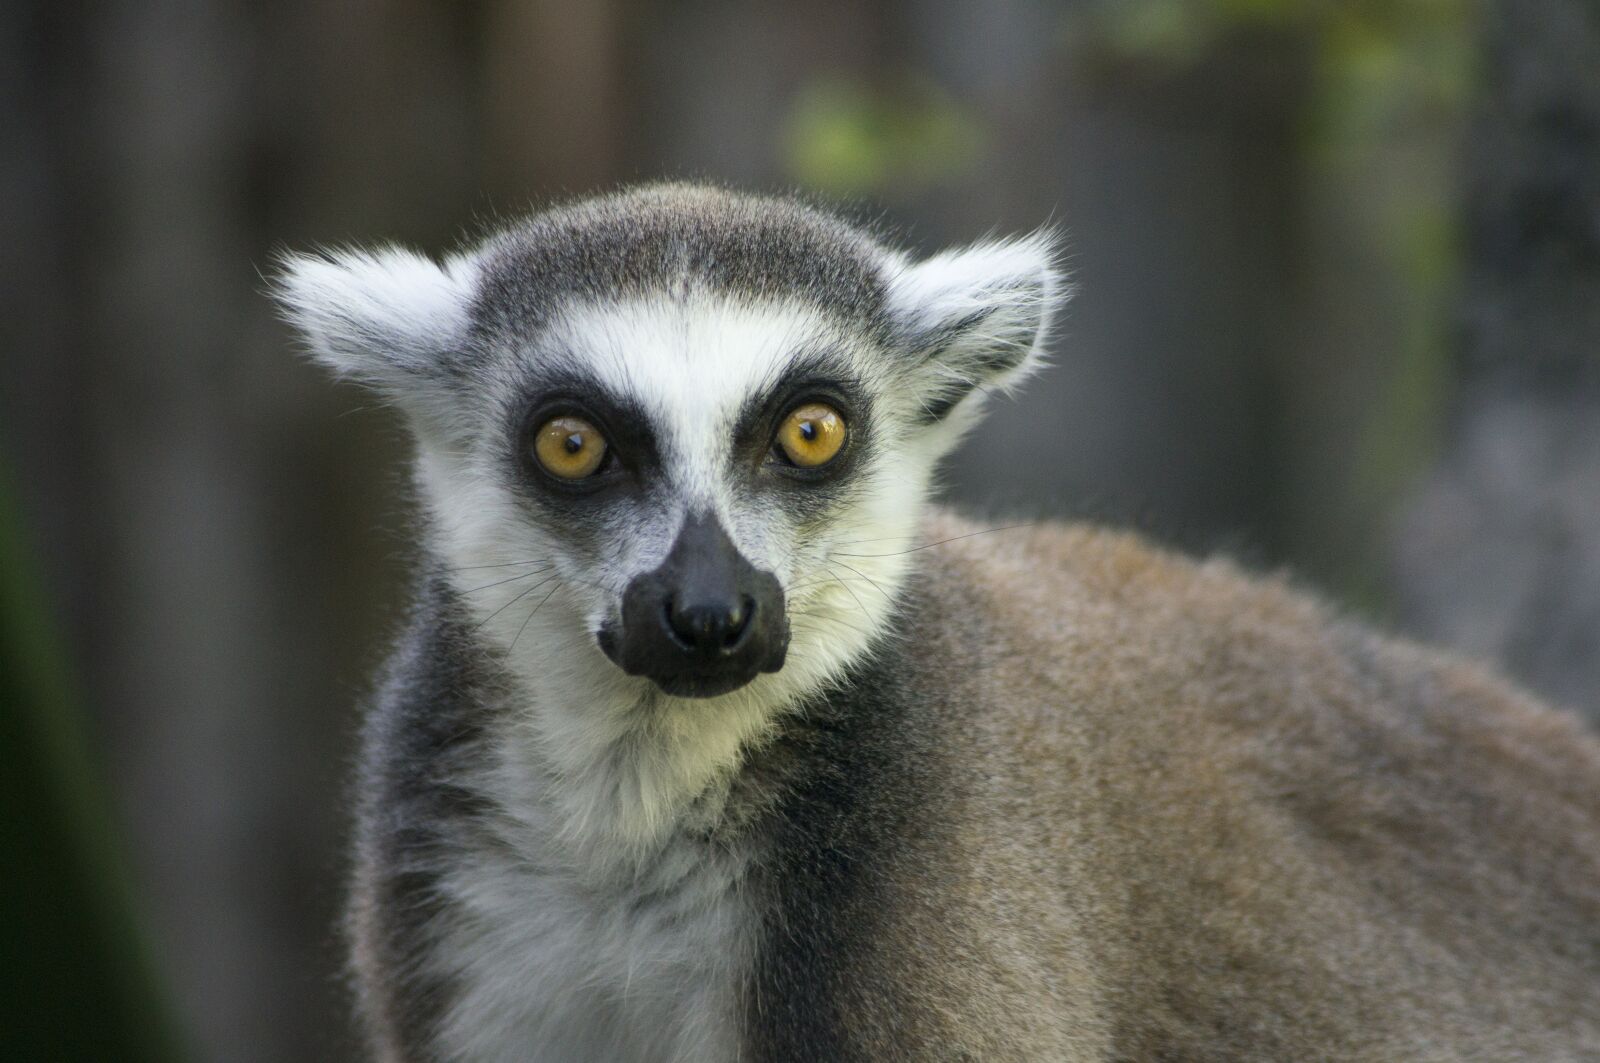 Sony Alpha DSLR-A580 sample photo. Lemur, madagascar, funny photography